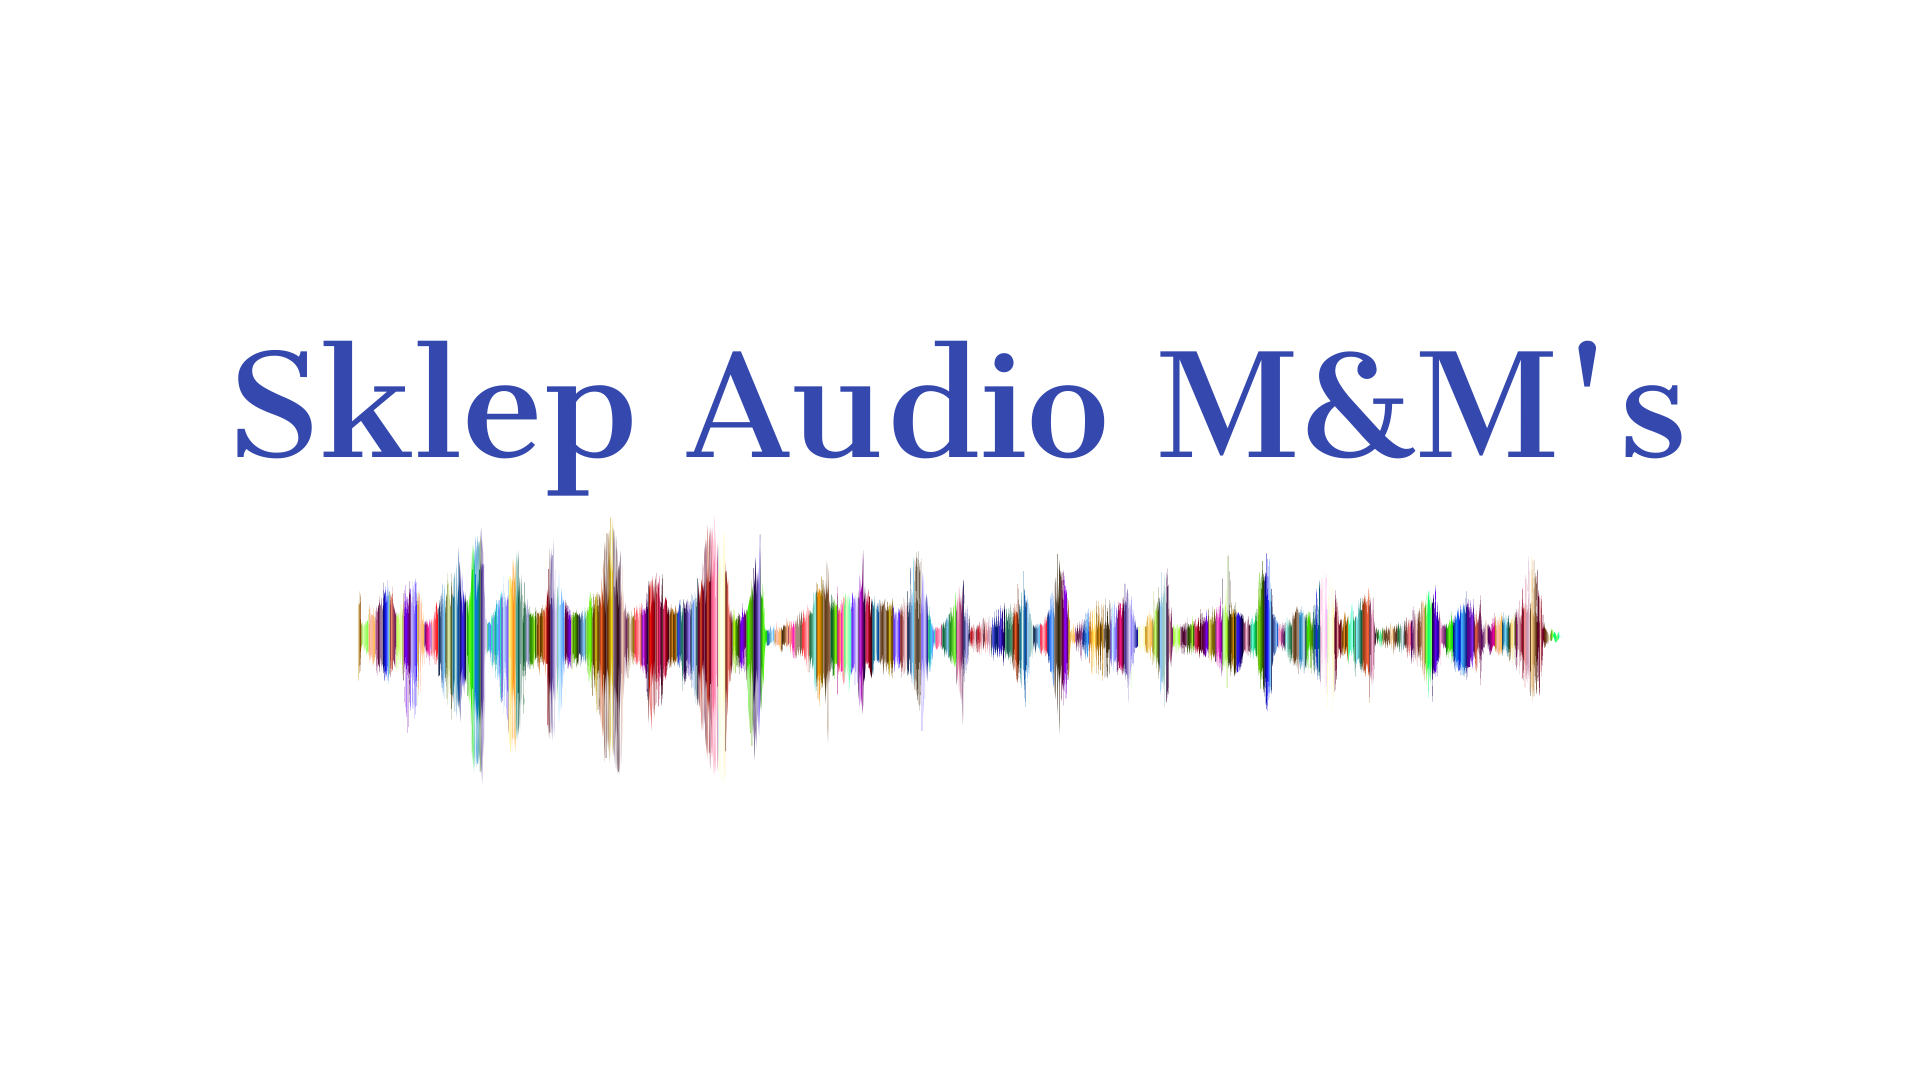 Sklep Audio M&M's